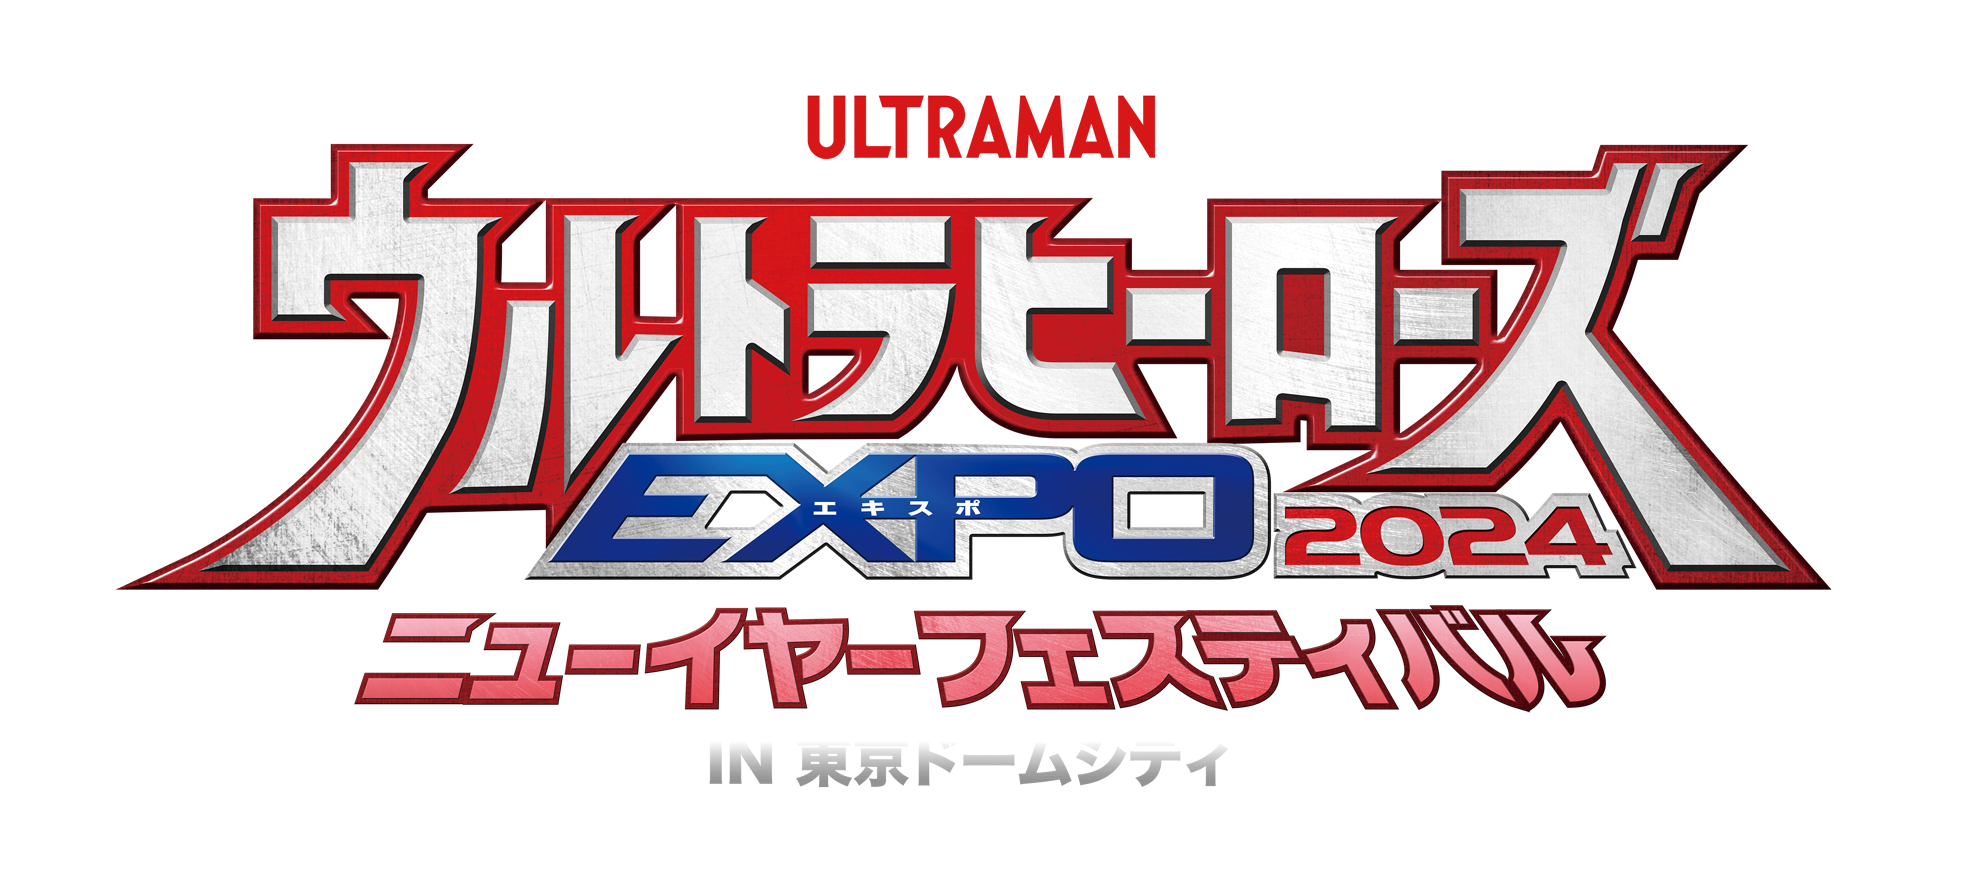 ウルトラヒーローズEXPO 2024 ニューイヤーフェスティバル IN 東京ドームシティ